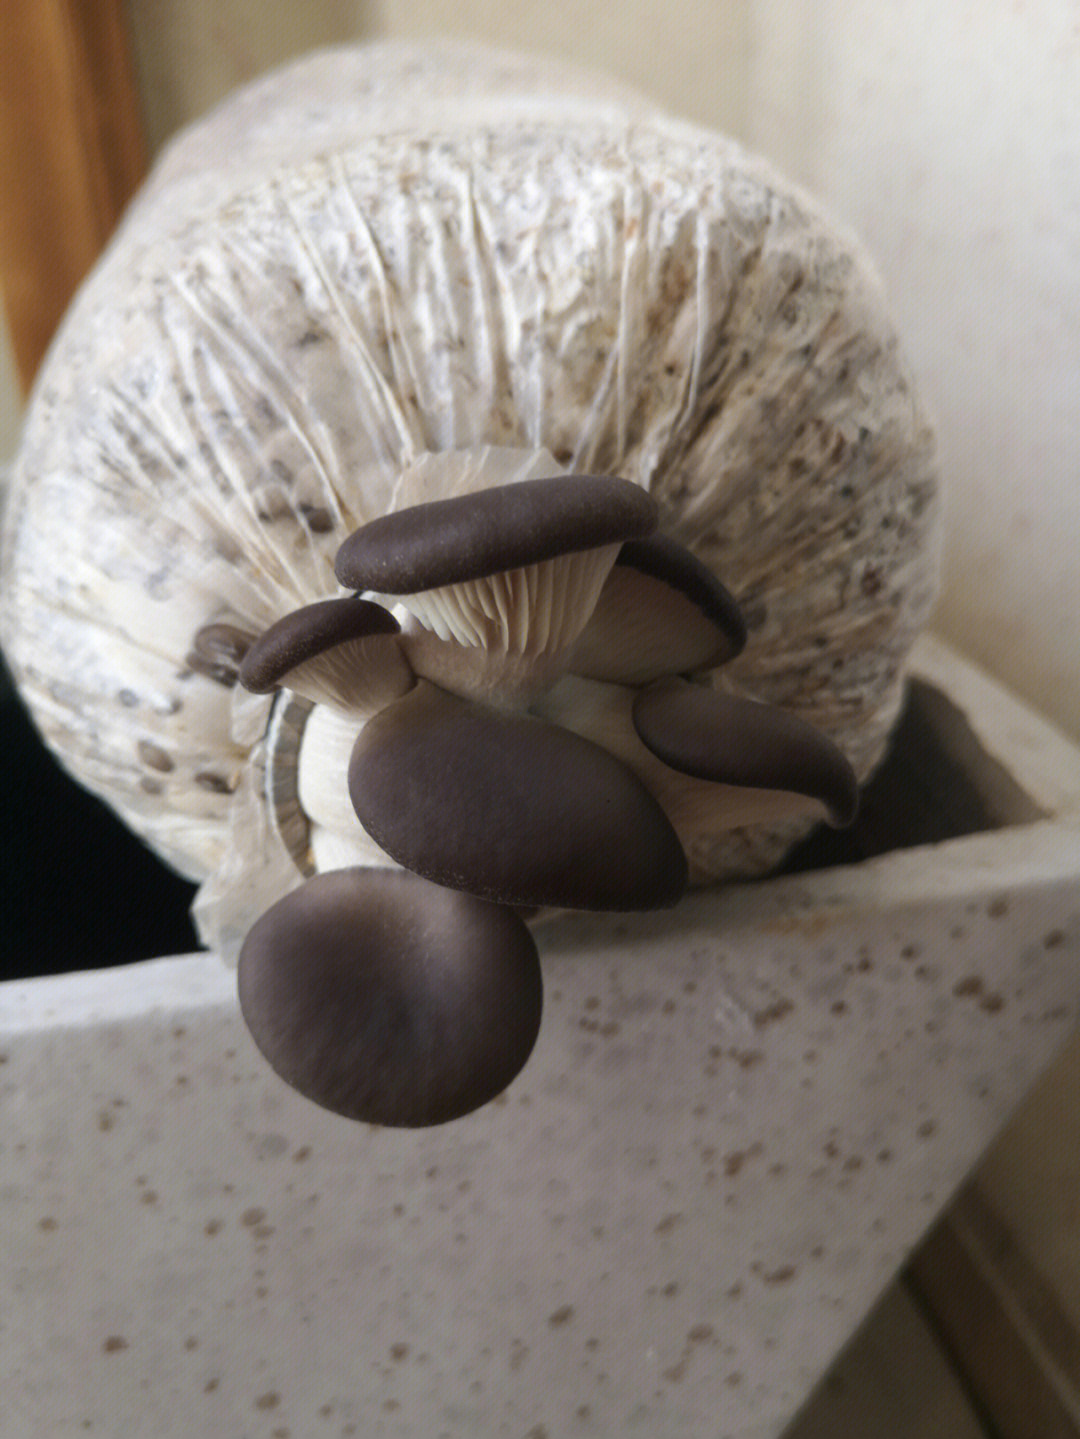 蘑菇生长过程示意图图片